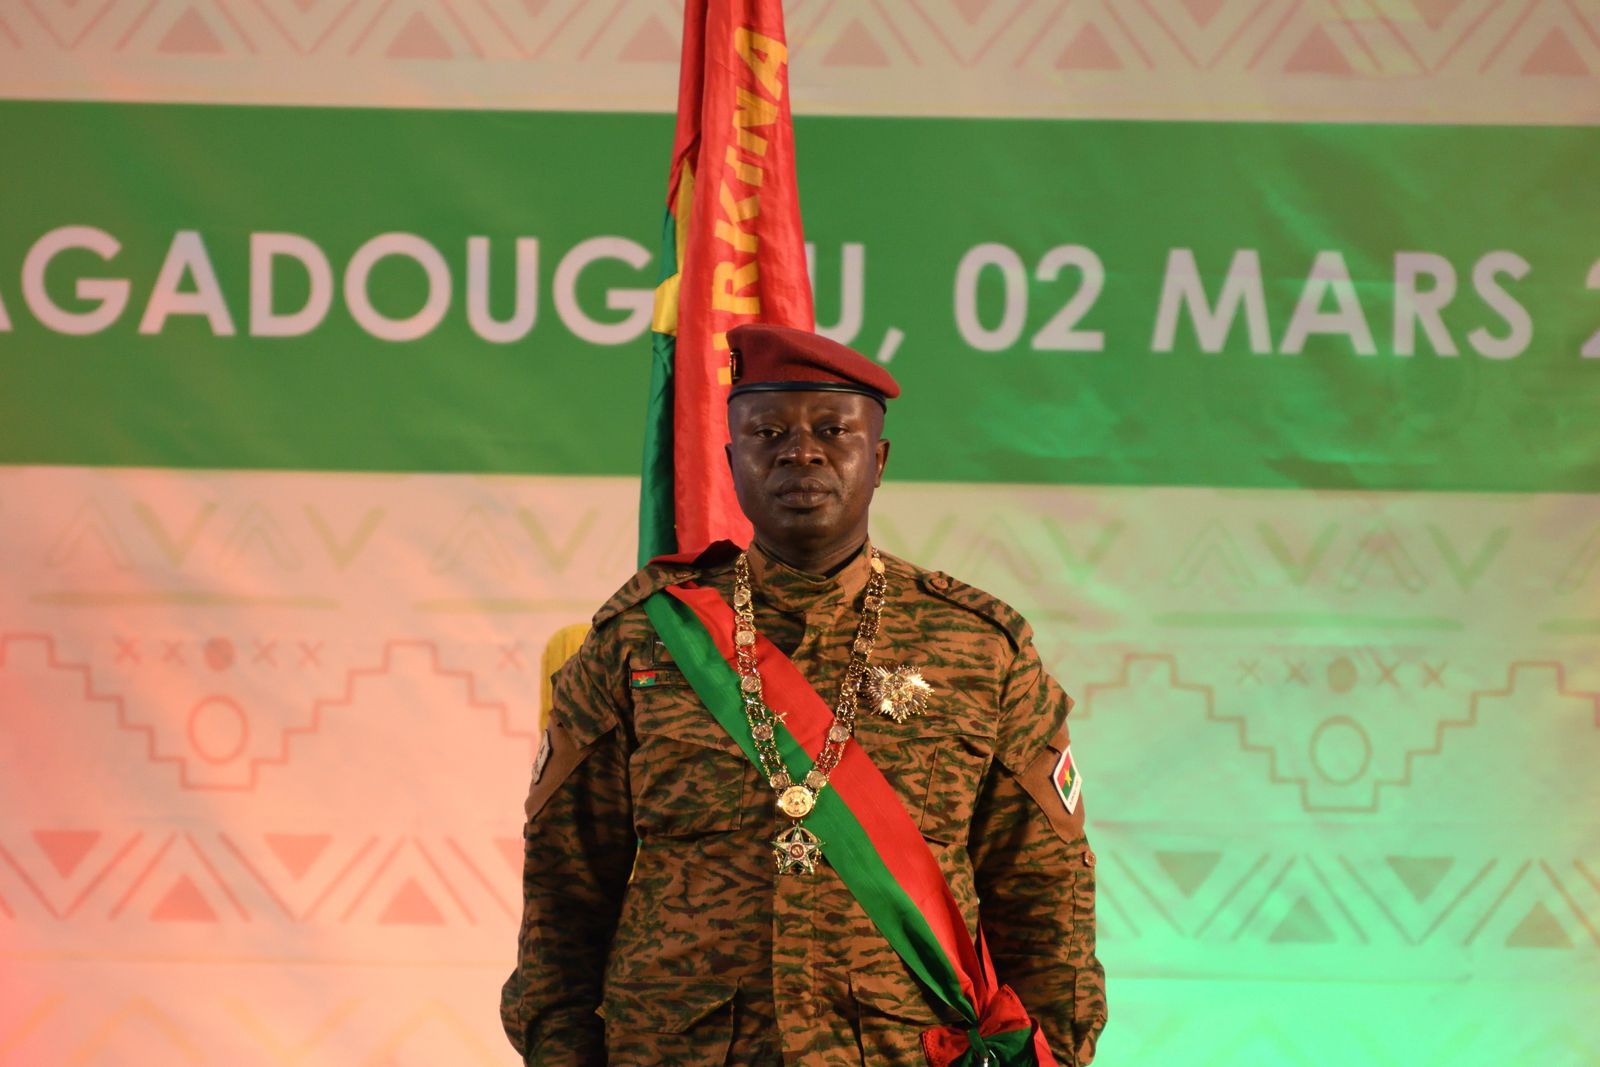 المقدّم بول هنري داميبا يؤدي القسم الدستورية رئيساً لفترة انتقالية مدتها ثلاث سنوات في بوركينا فاسو - 2 مارس 2022 - REUTERS